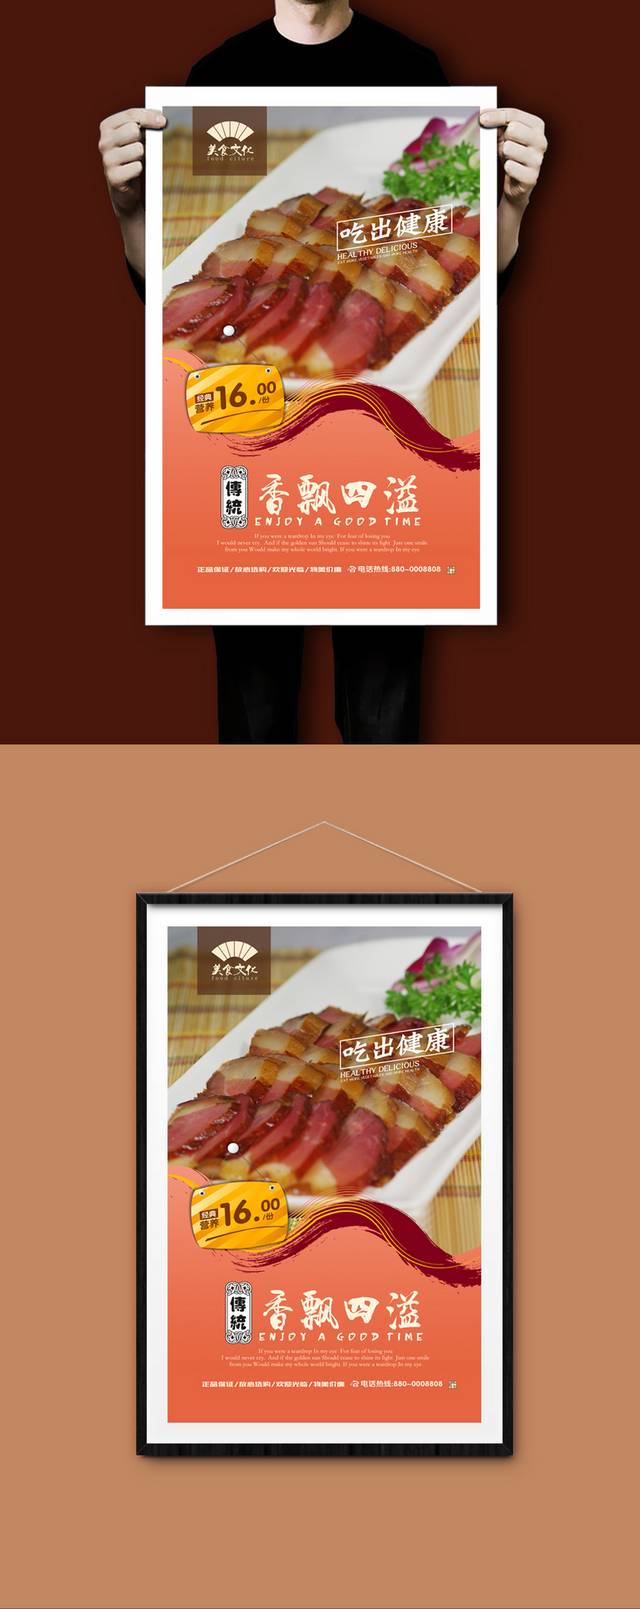 高清腊肉促销海报设计psd模板